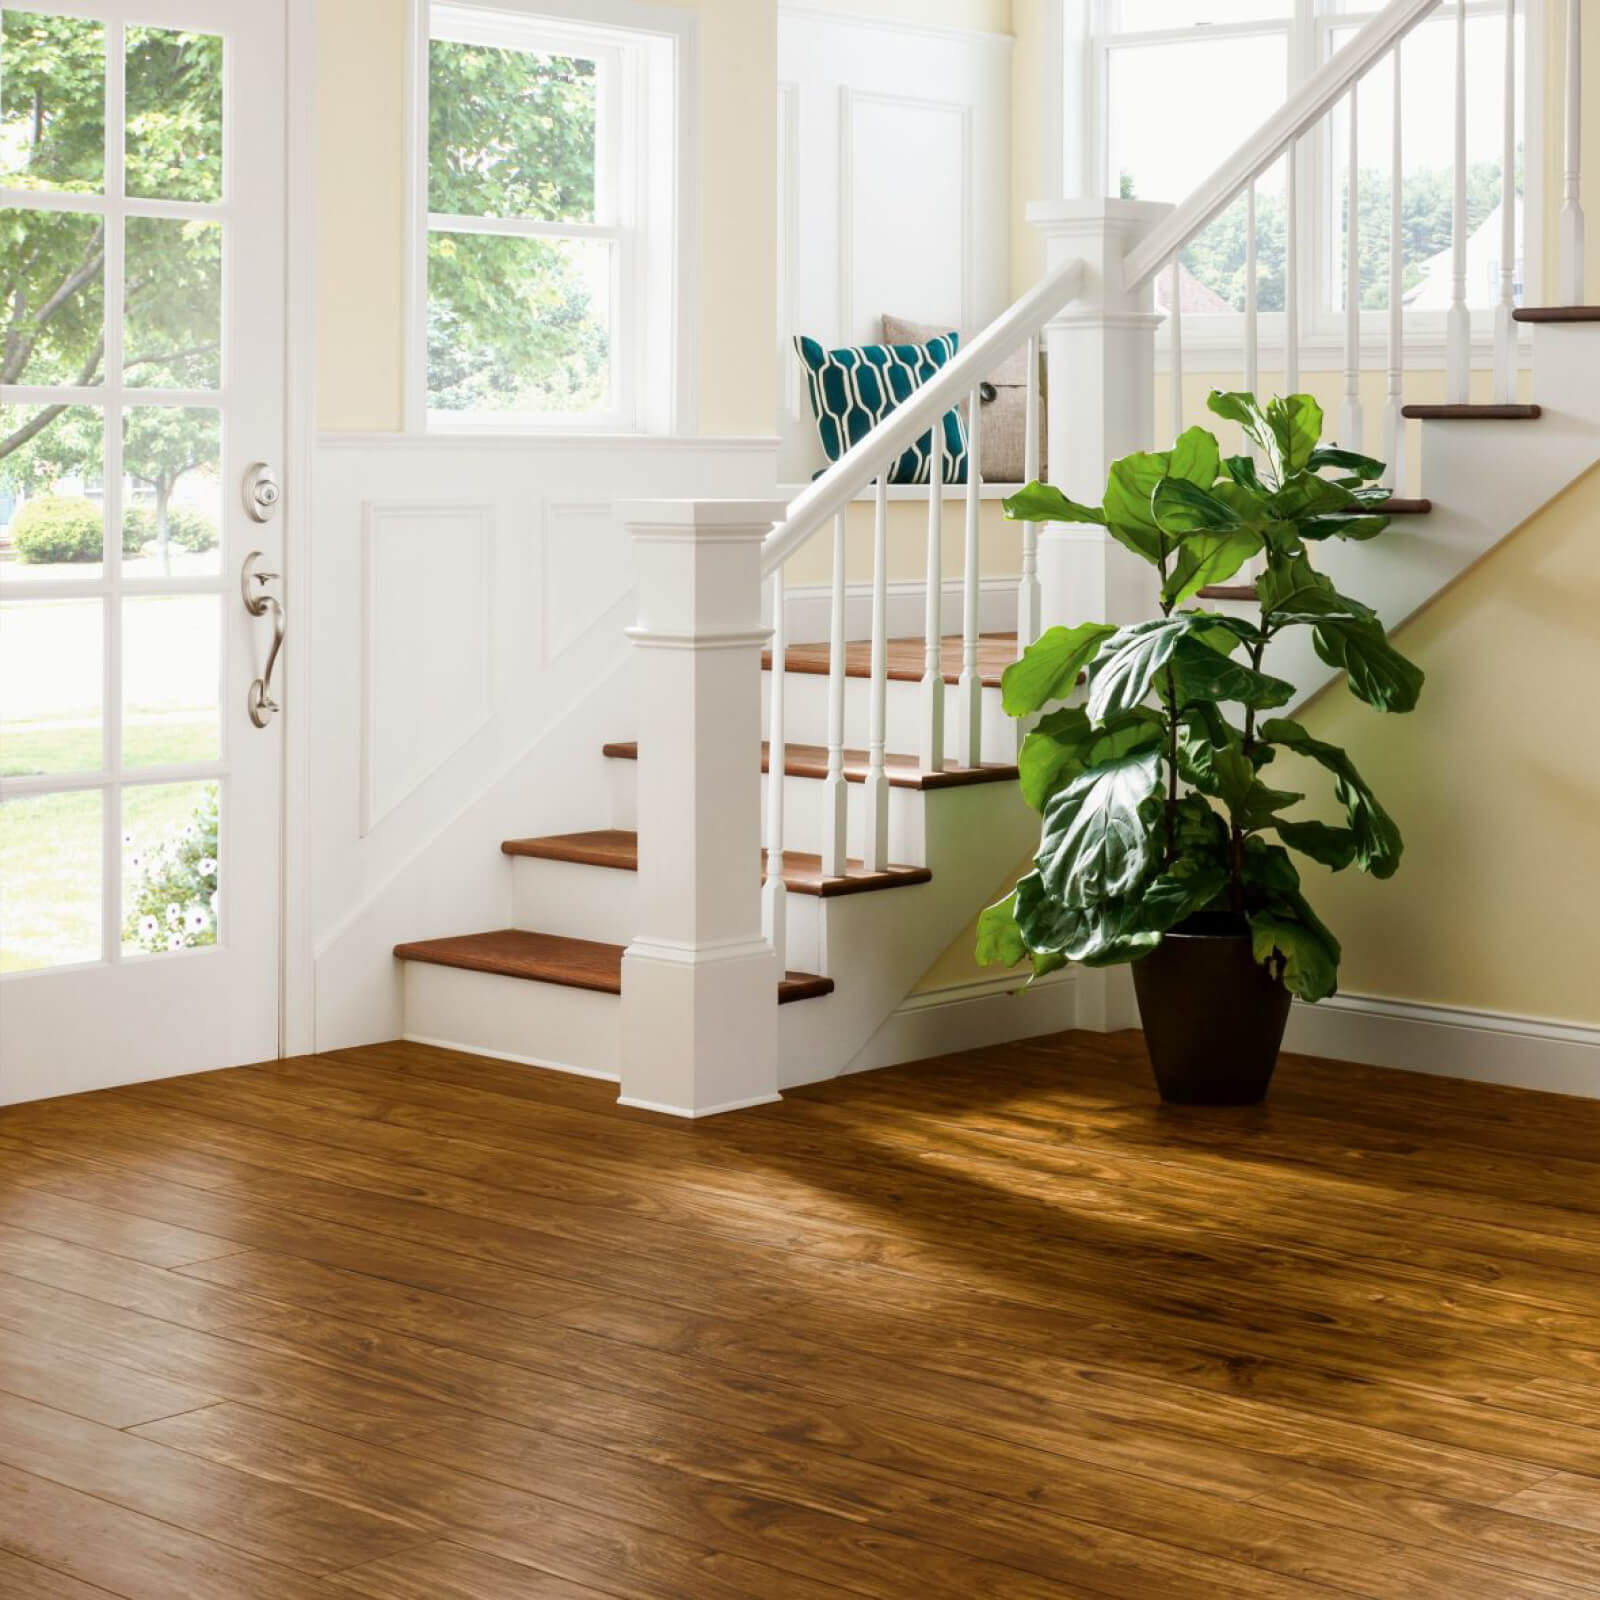 vinyl flooring in entryway and stairway | Floorco Premium